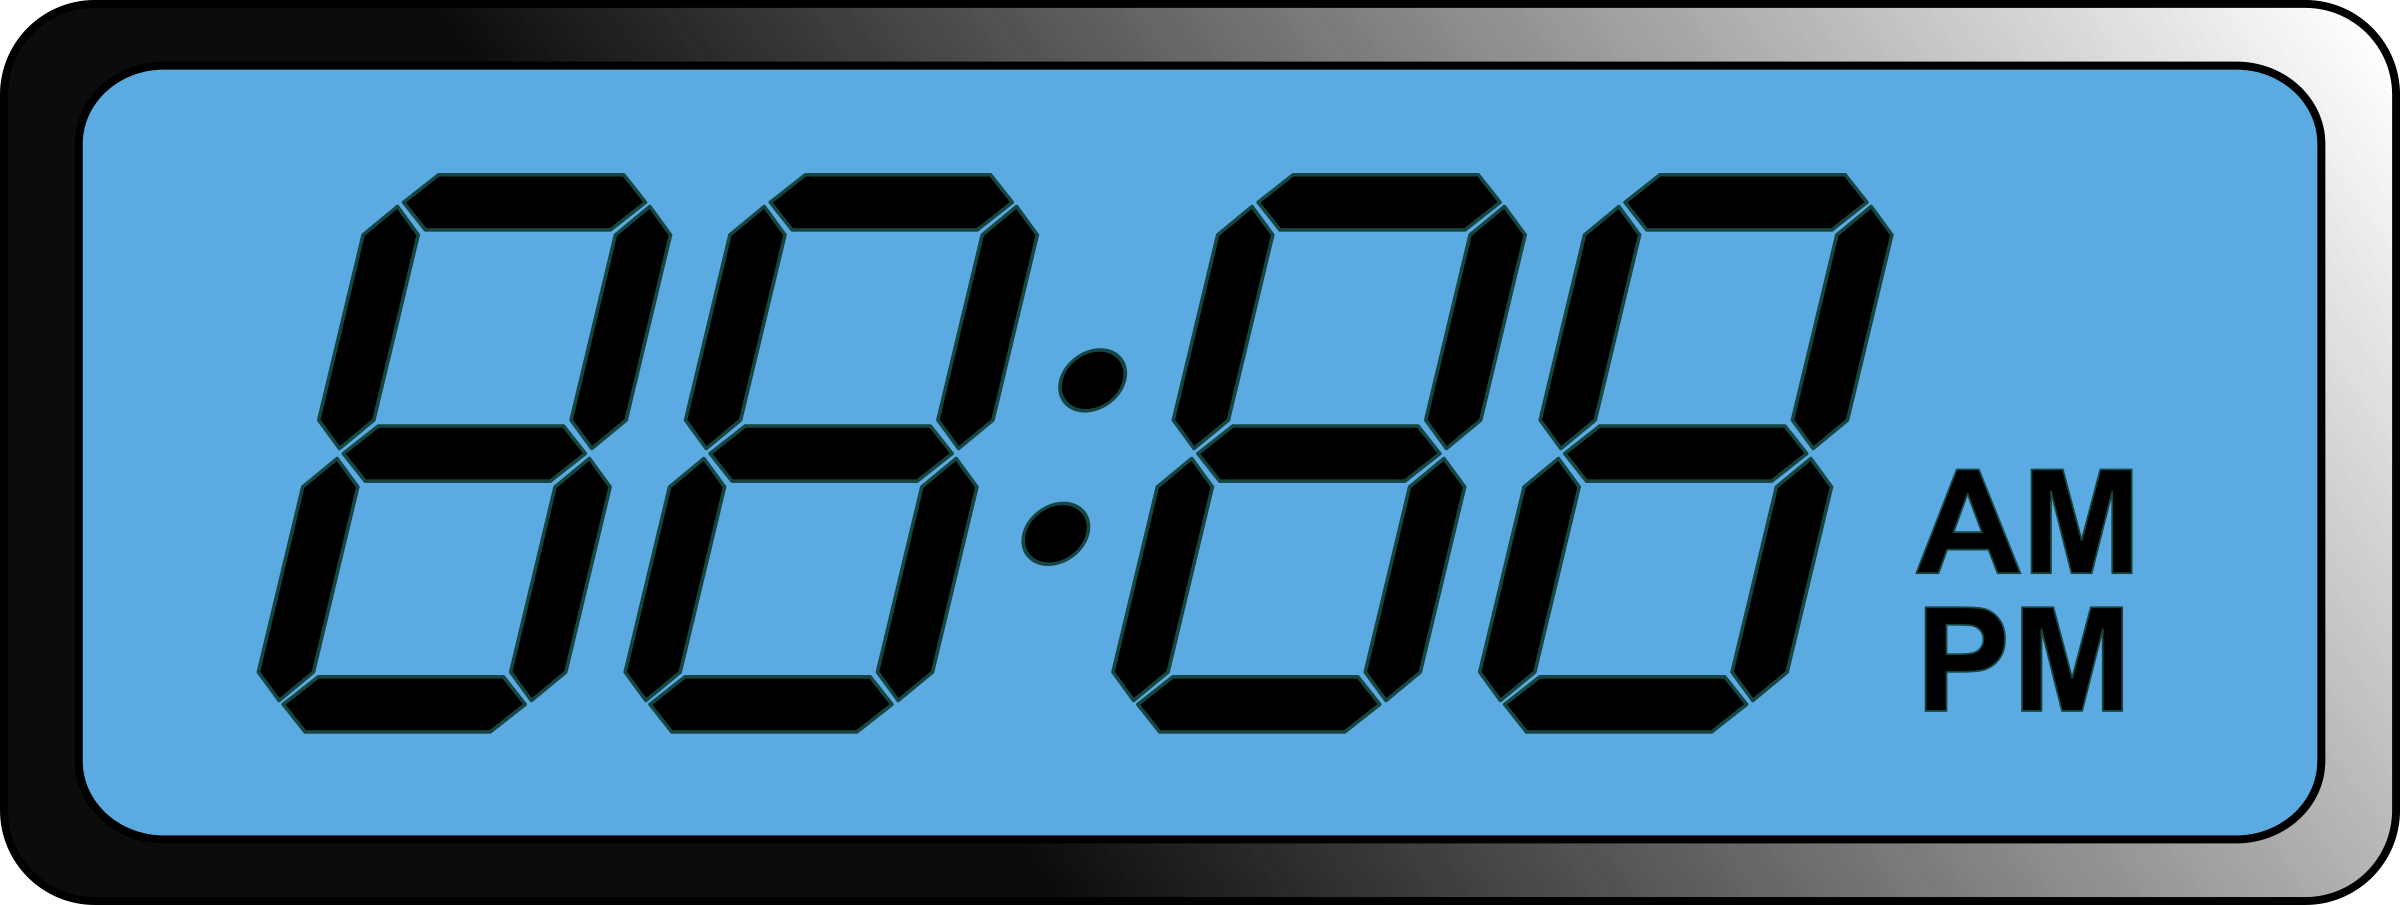 clock digital 